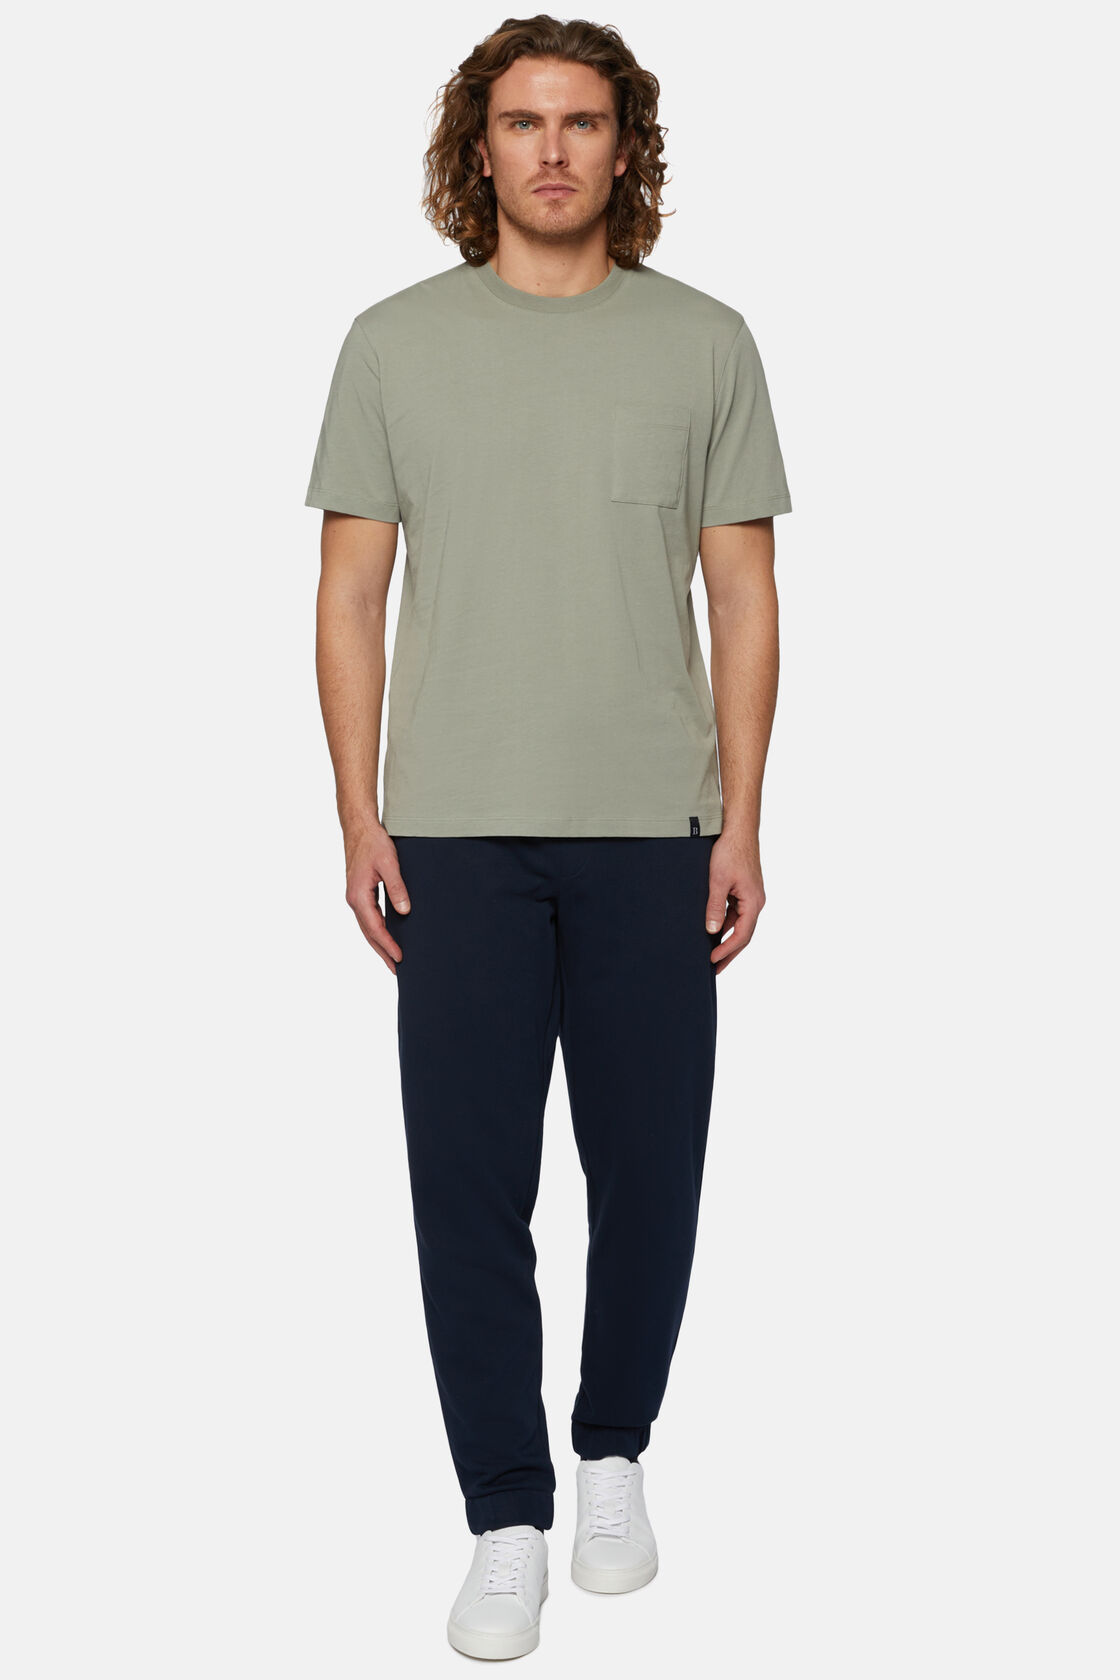 Ss Australian Cotton Jersey T Shirt, Green, hi-res